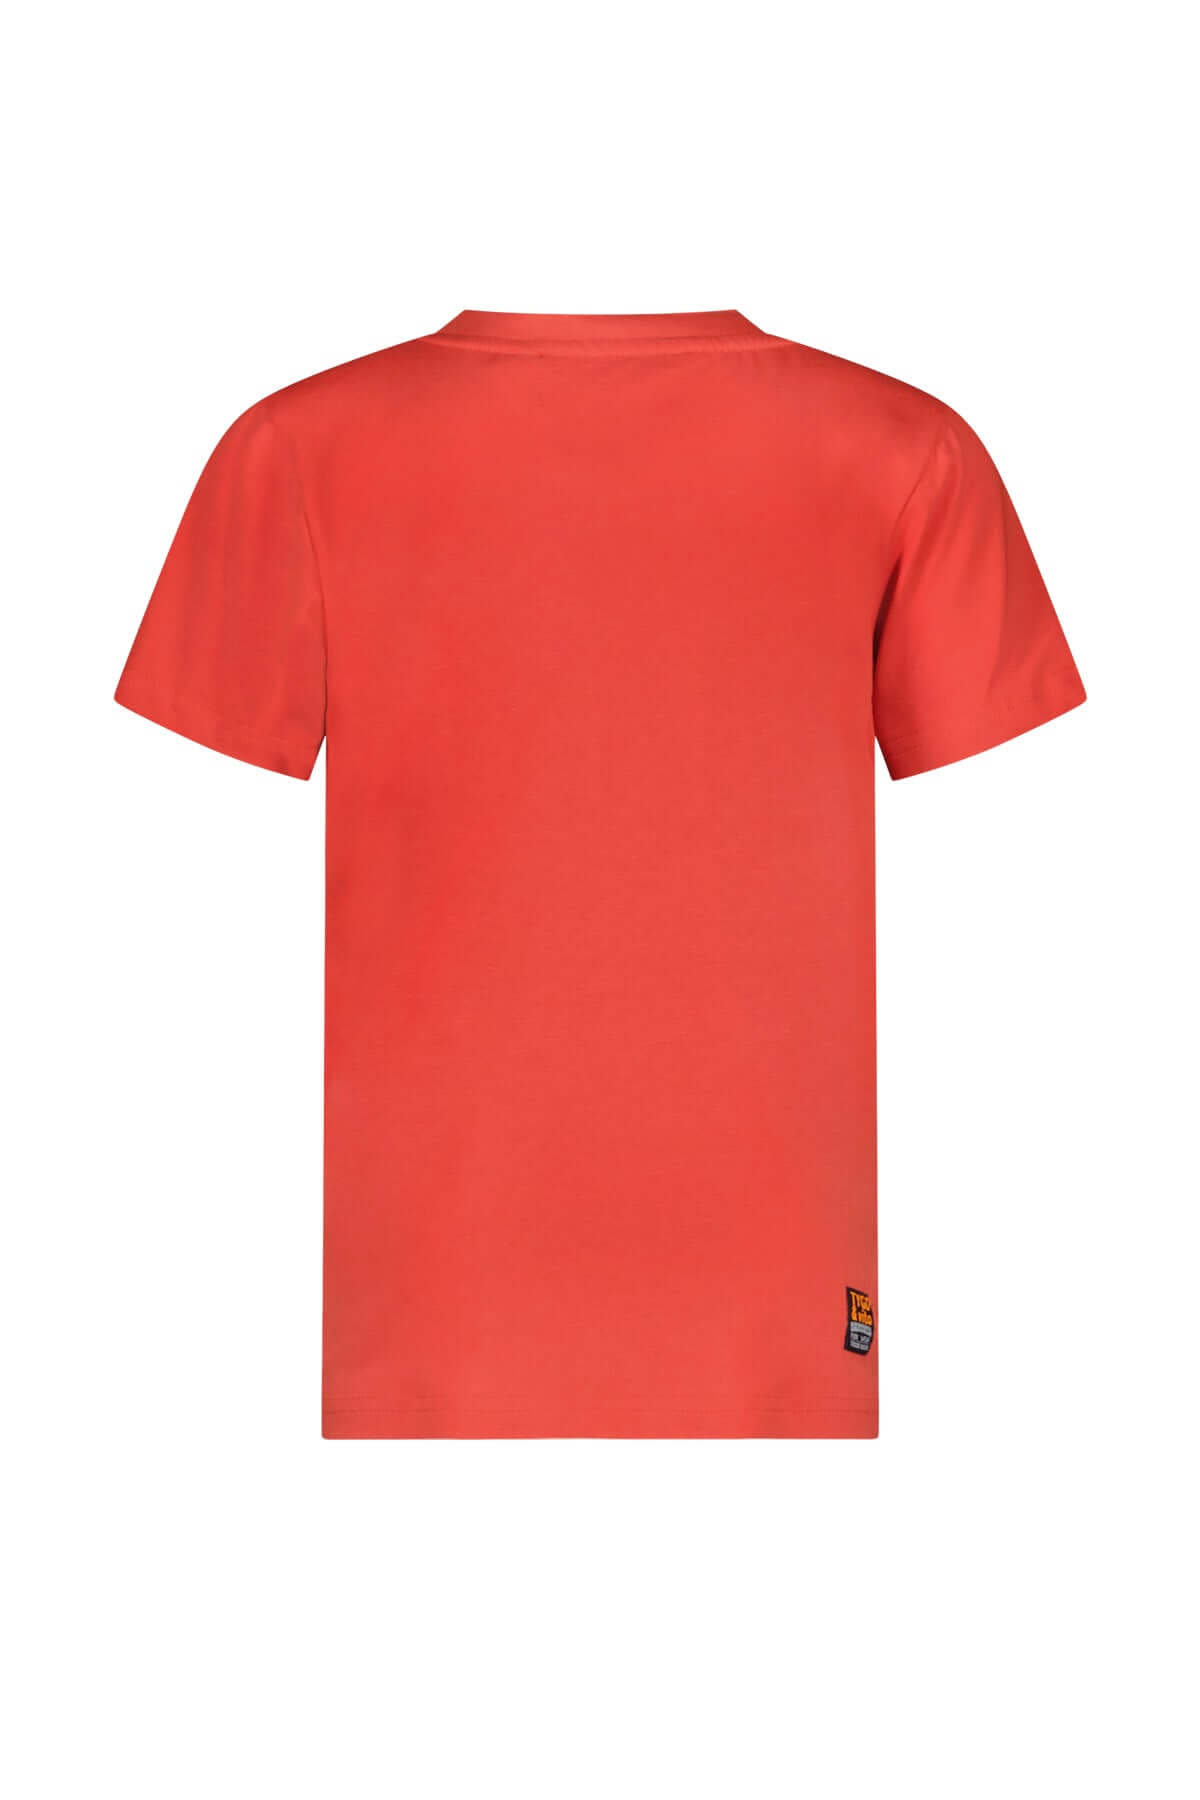 Tygo & vito T-shirt Toby Red